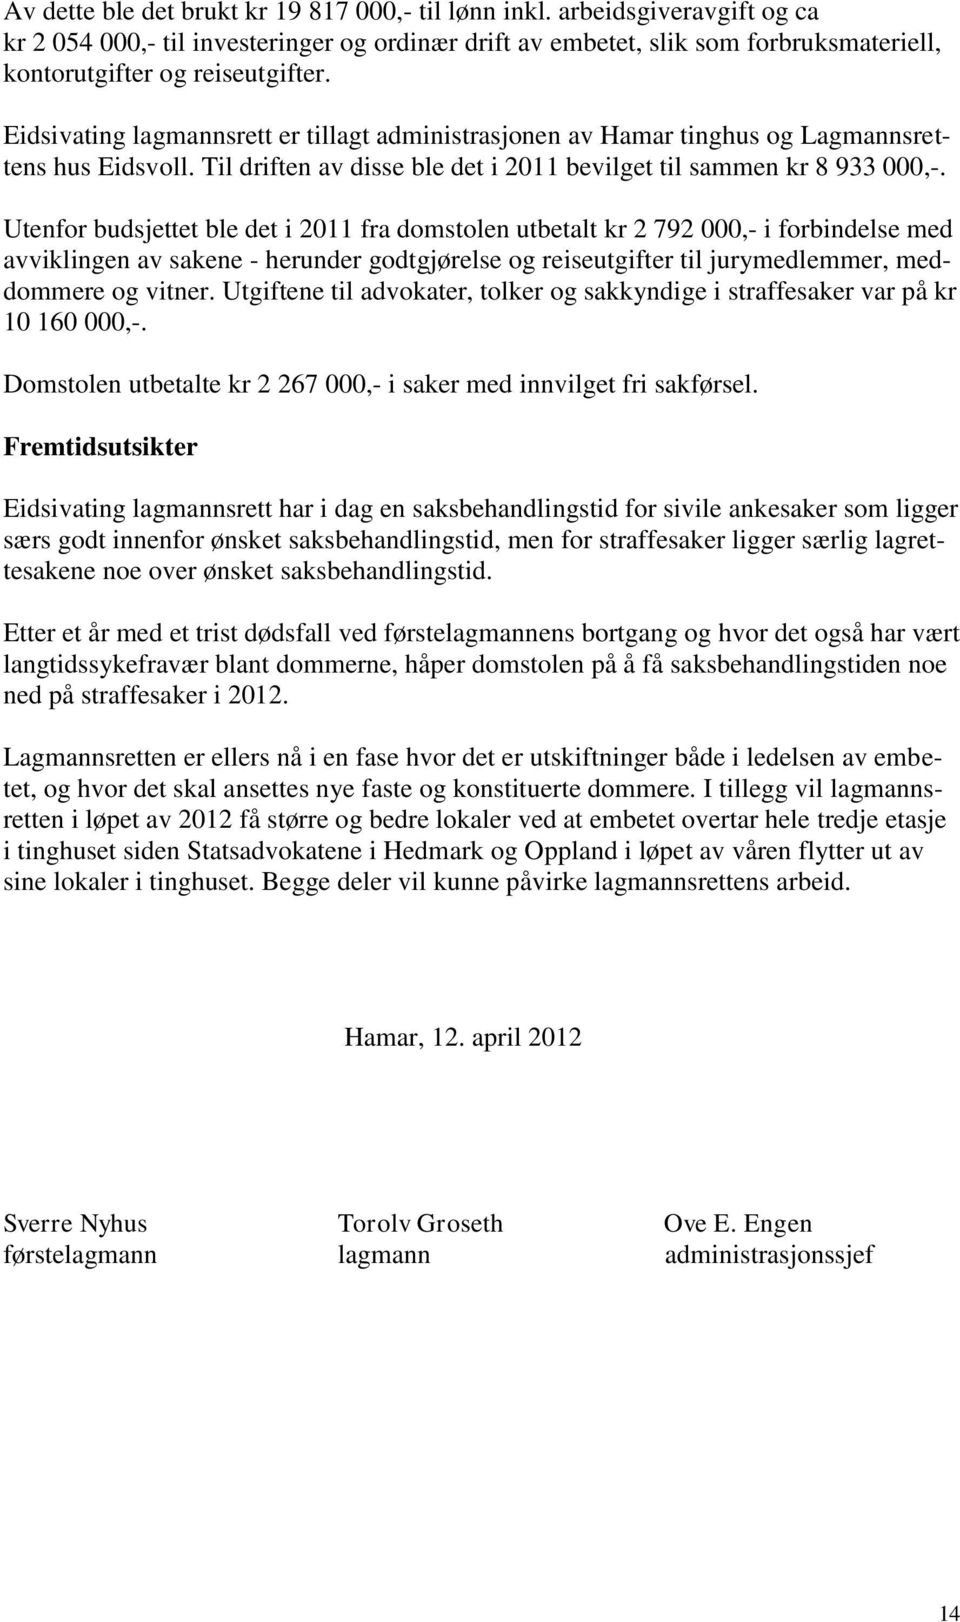 Eidsivating lagmannsrett er tillagt administrasjonen av Hamar tinghus og Lagmannsrettens hus Eidsvoll. Til driften av disse ble det i 2011 bevilget til sammen kr 8 933 000,-.